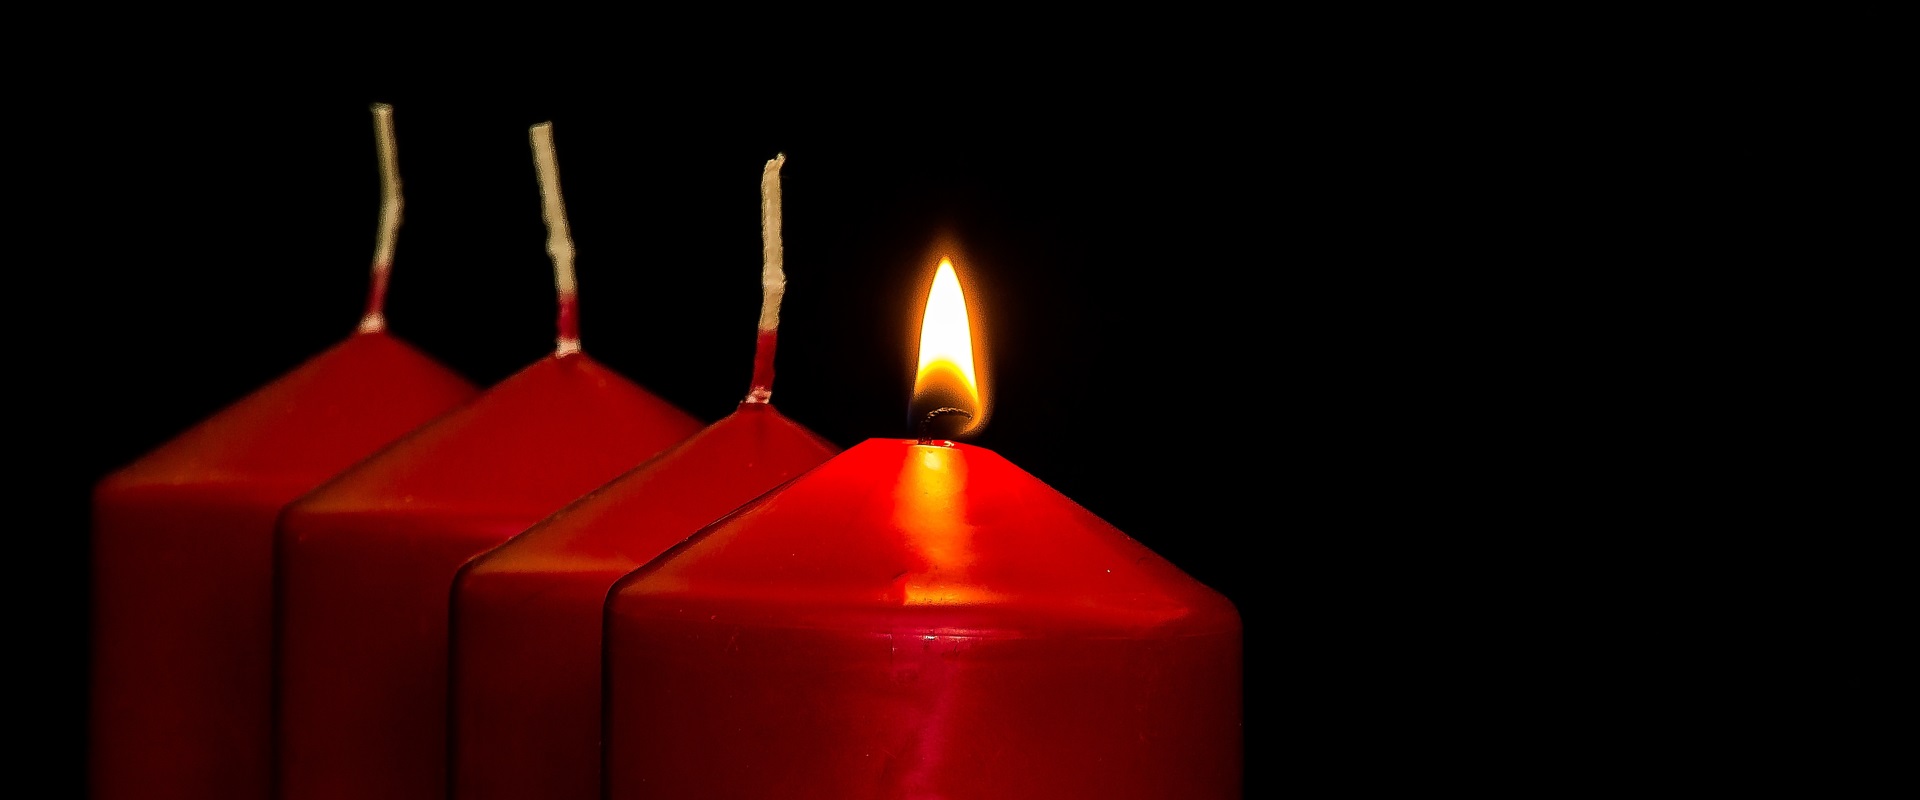 Die erste rote Kerze zu Advent brennt in einer Reihe von vier Kerzen.